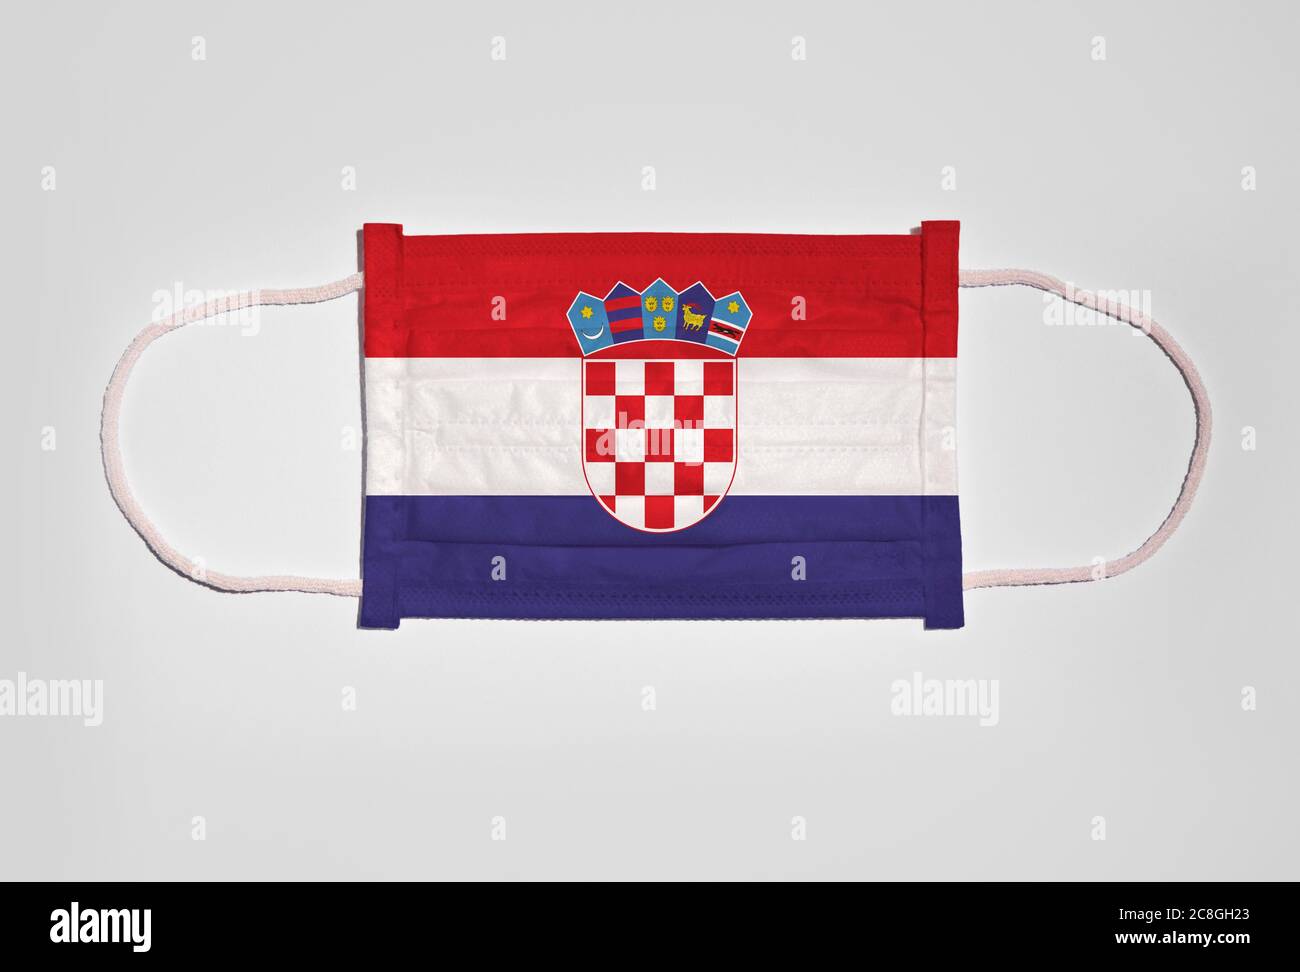 Immagine simbolica crisi corona, maschera facciale, maschera respiratoria, protezione bocca e naso con bandiera della Croazia, sfondo bianco Foto Stock